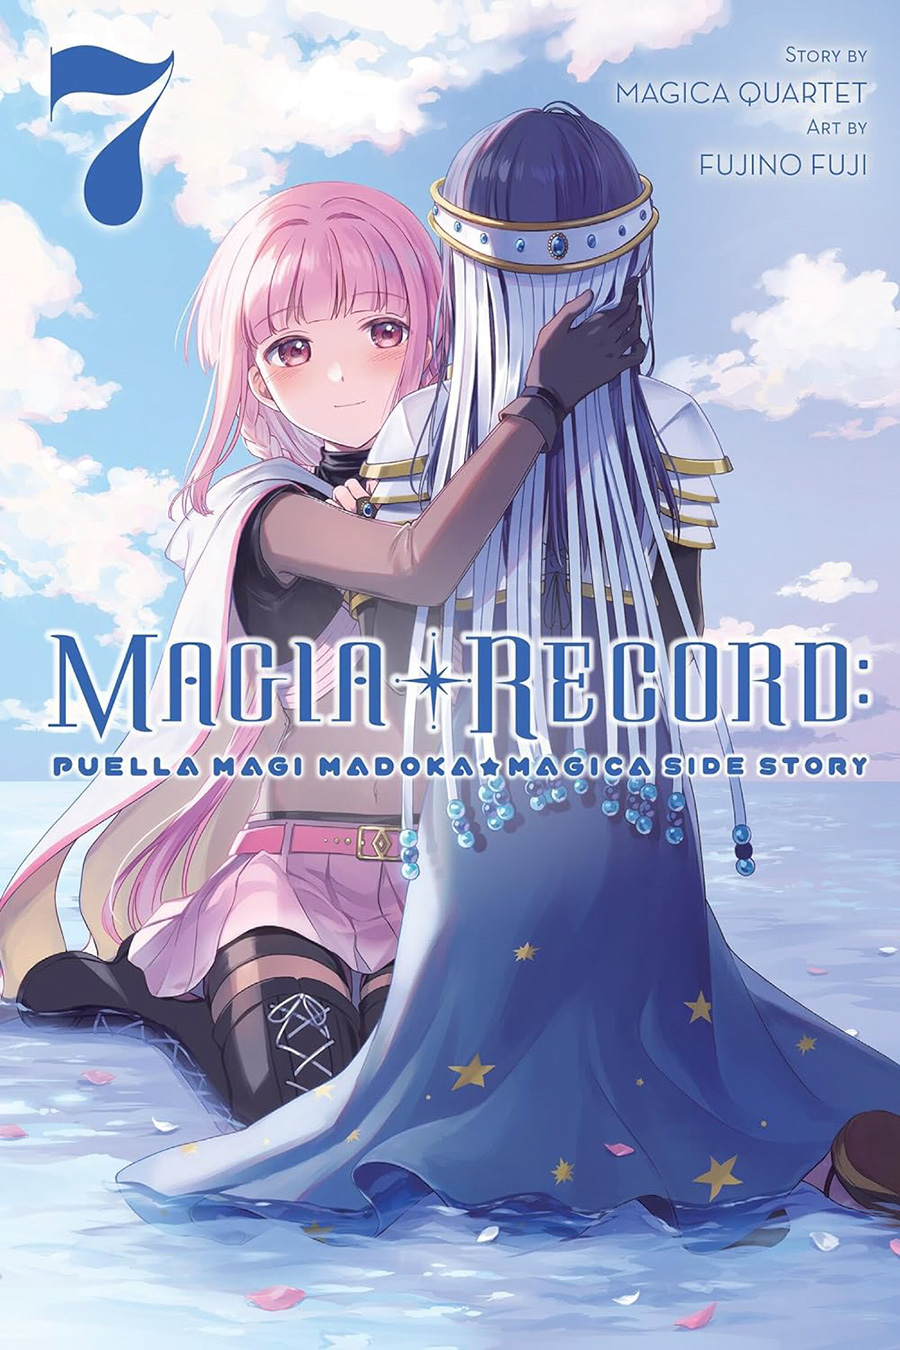 Magia Record Puella Magi Madoka Magica Side Story Vol 7 GN